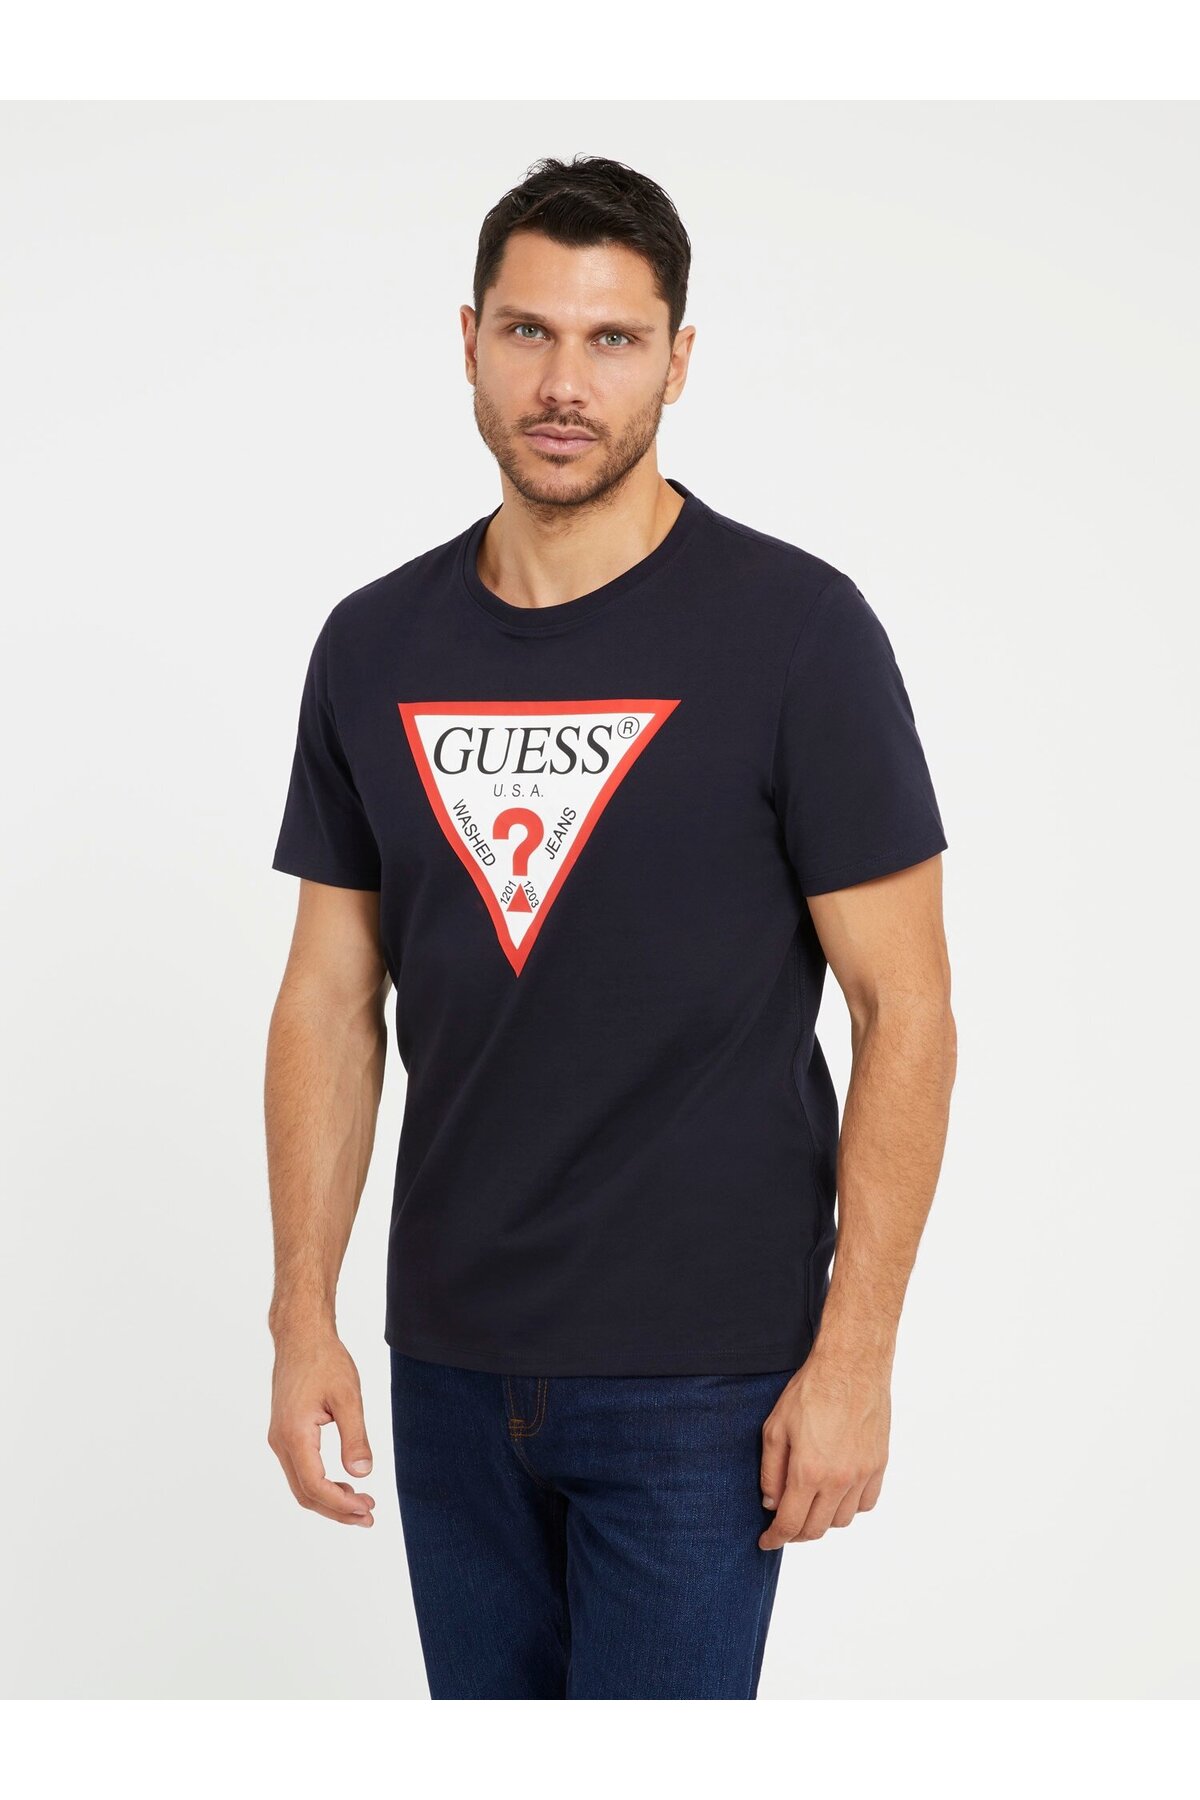 Мужская приталенная футболка с оригинальным логотипом Guess, темно-синий